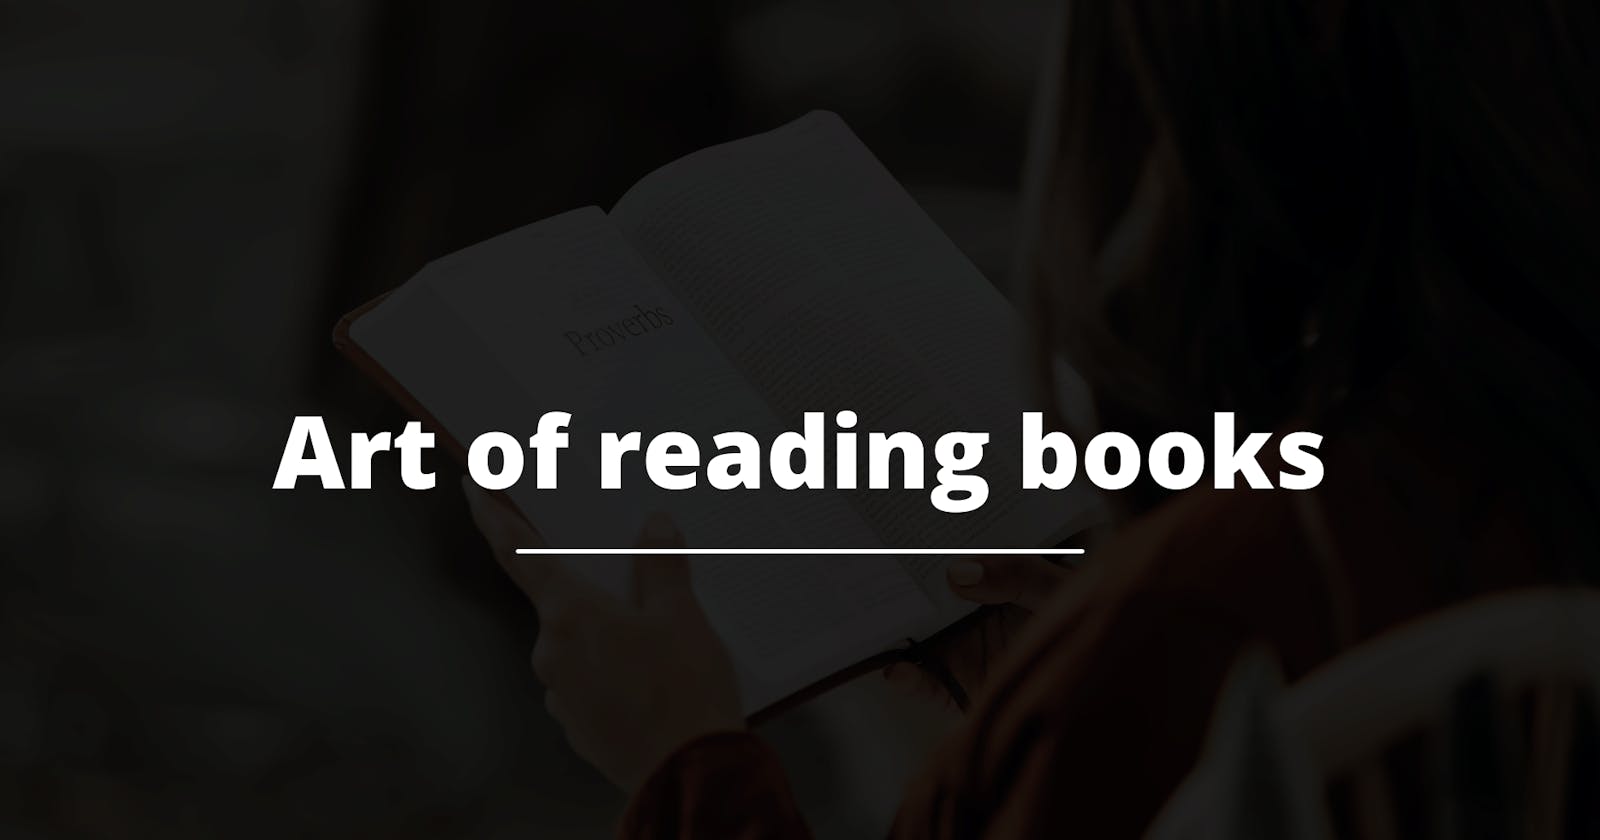 Art of reading books